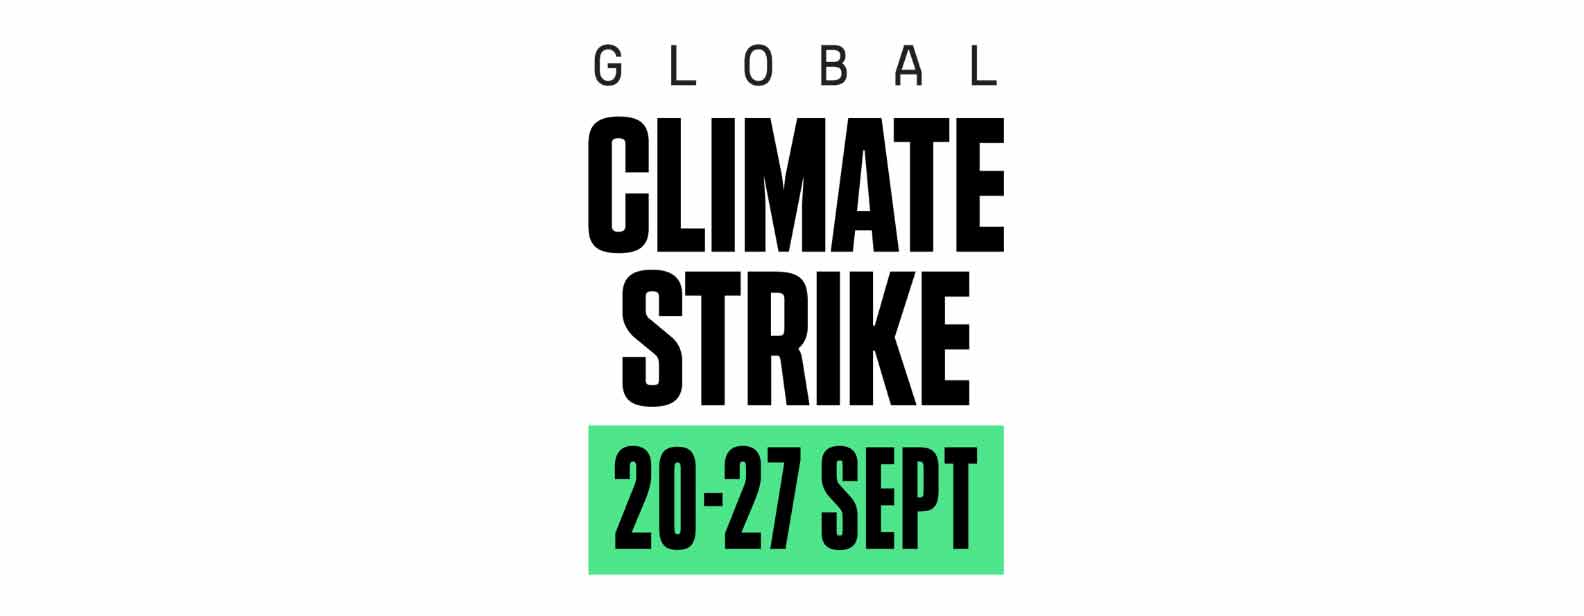 Aufruf zum globalen Klimastreik am 20. September 2019